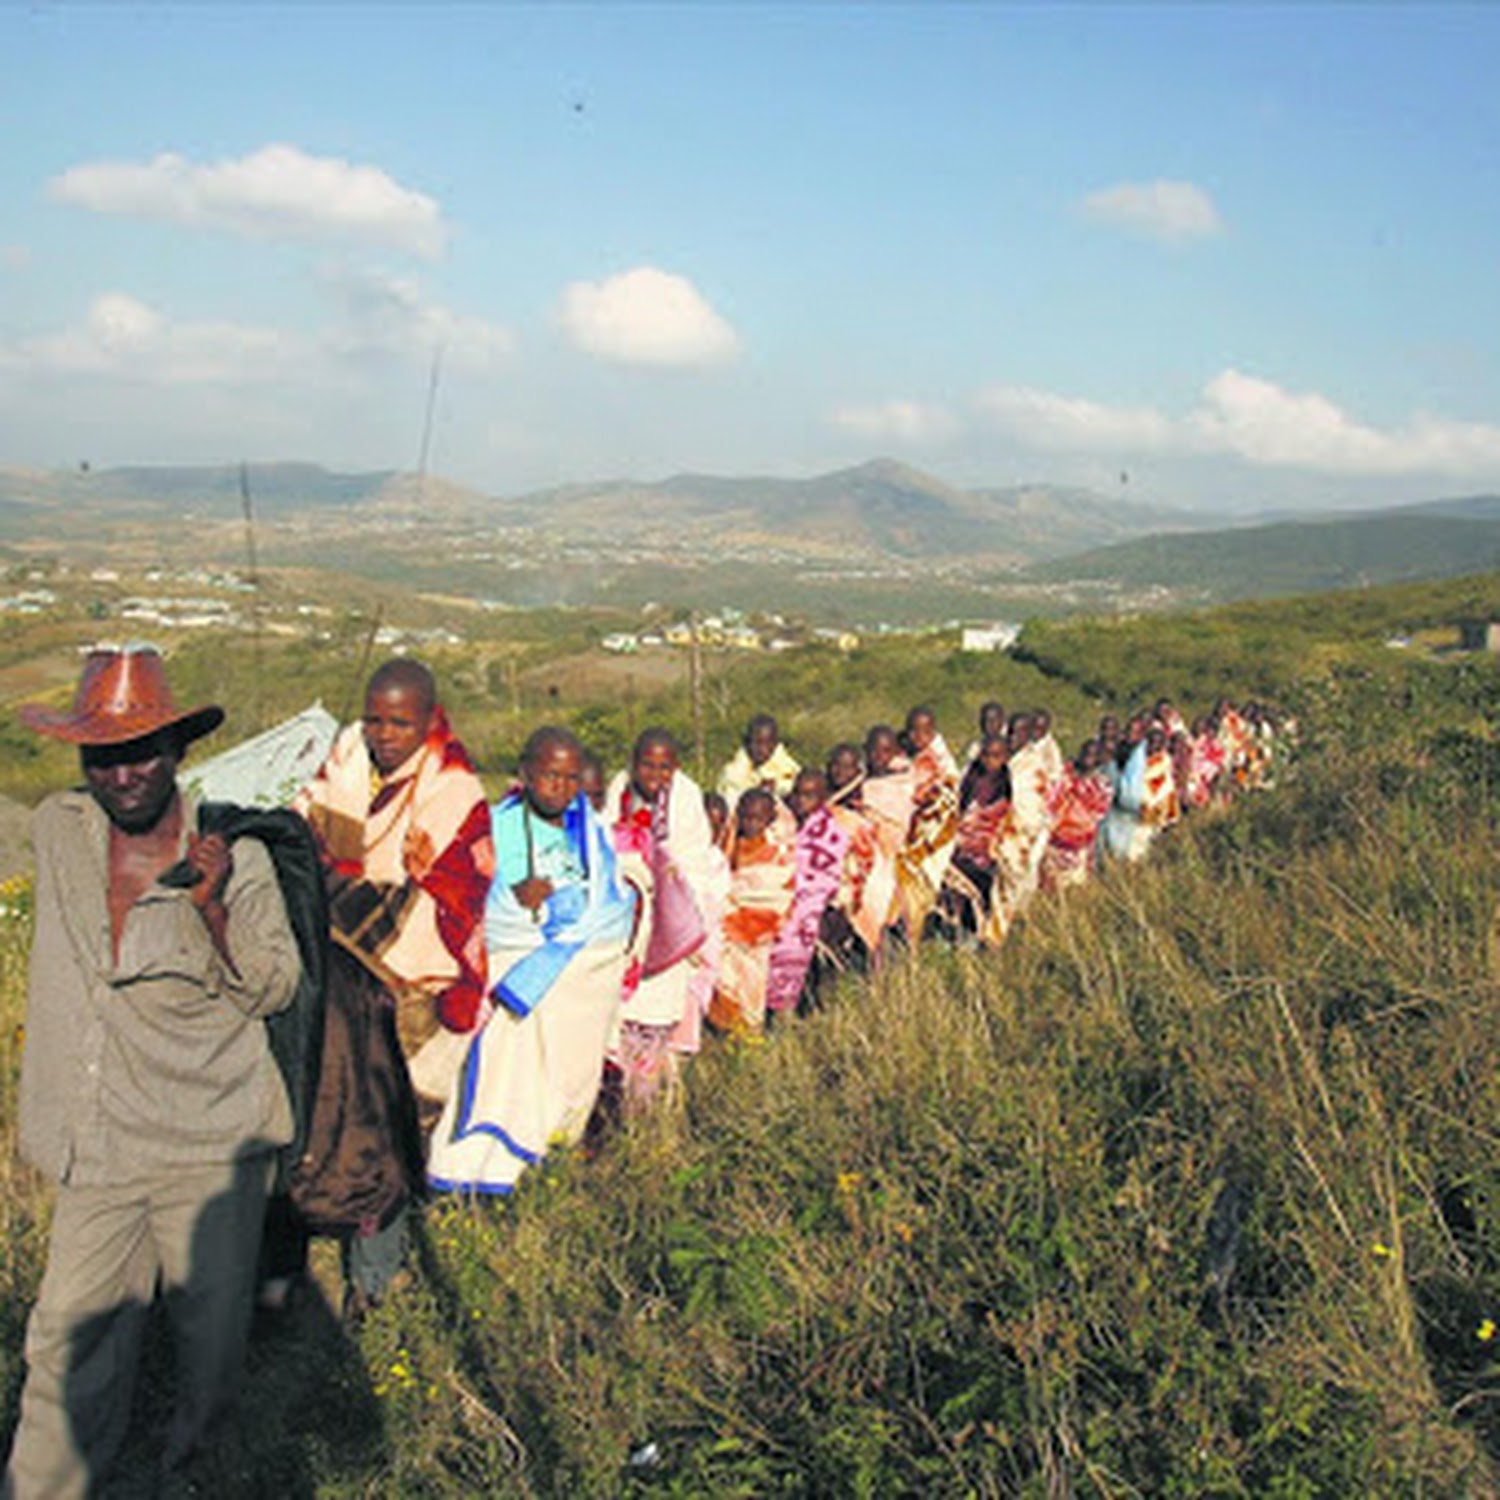 "حفل ختان" في جنوب إفريقيا يتحوَّل لـ”مأساة”.. انتهى بوفاة 30 فتى وإصابة 80 آخرين